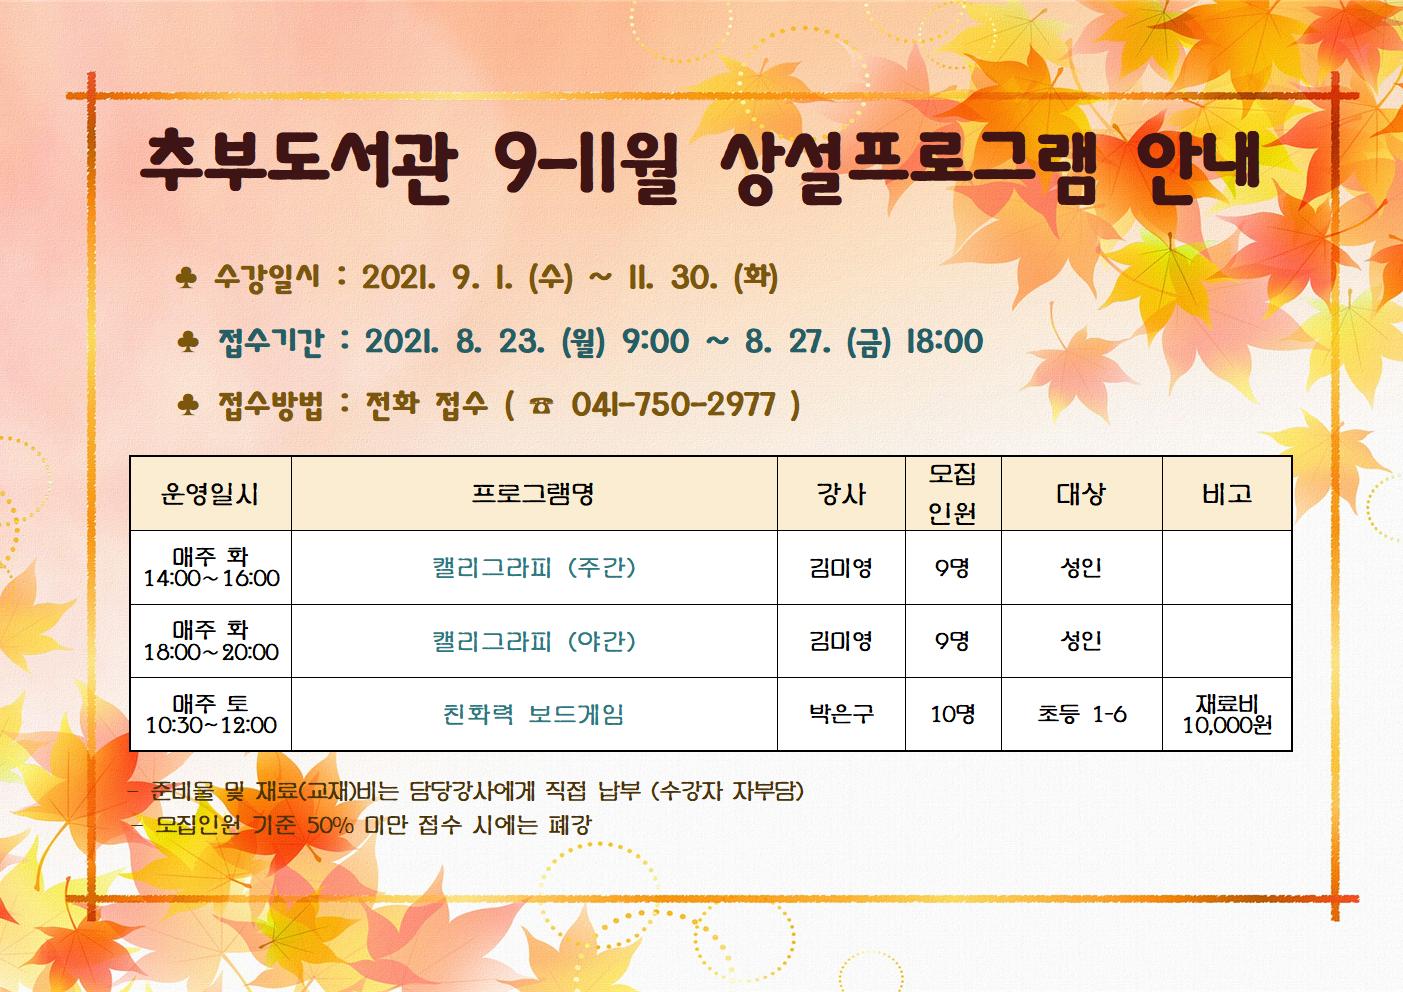 추부도서관 9-11월 상설 프로그램 수강생 모집